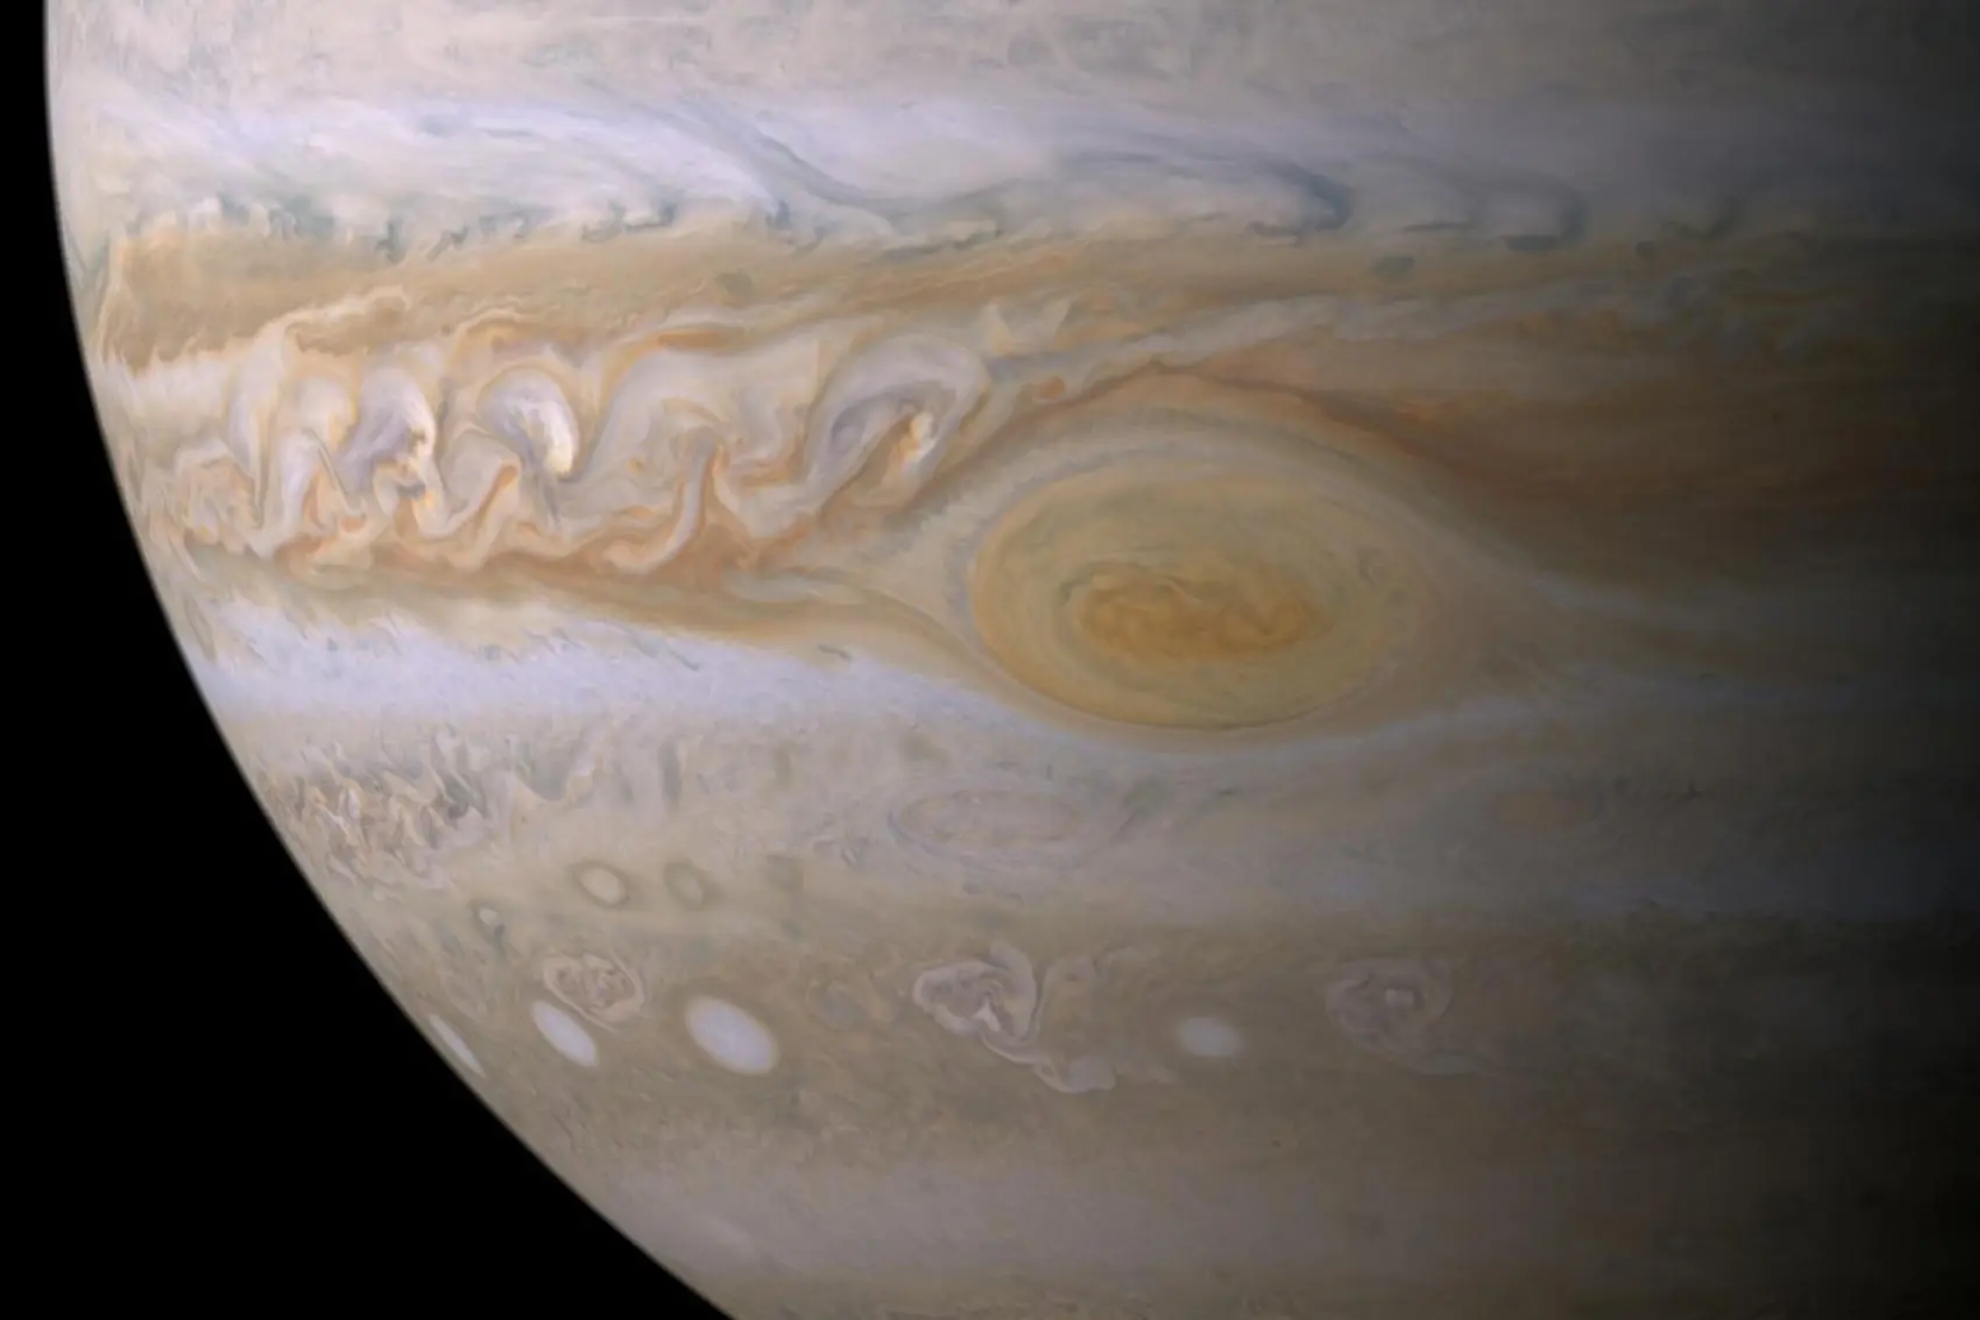 Jupiter will be visible on Monday, September 26th (NASA)